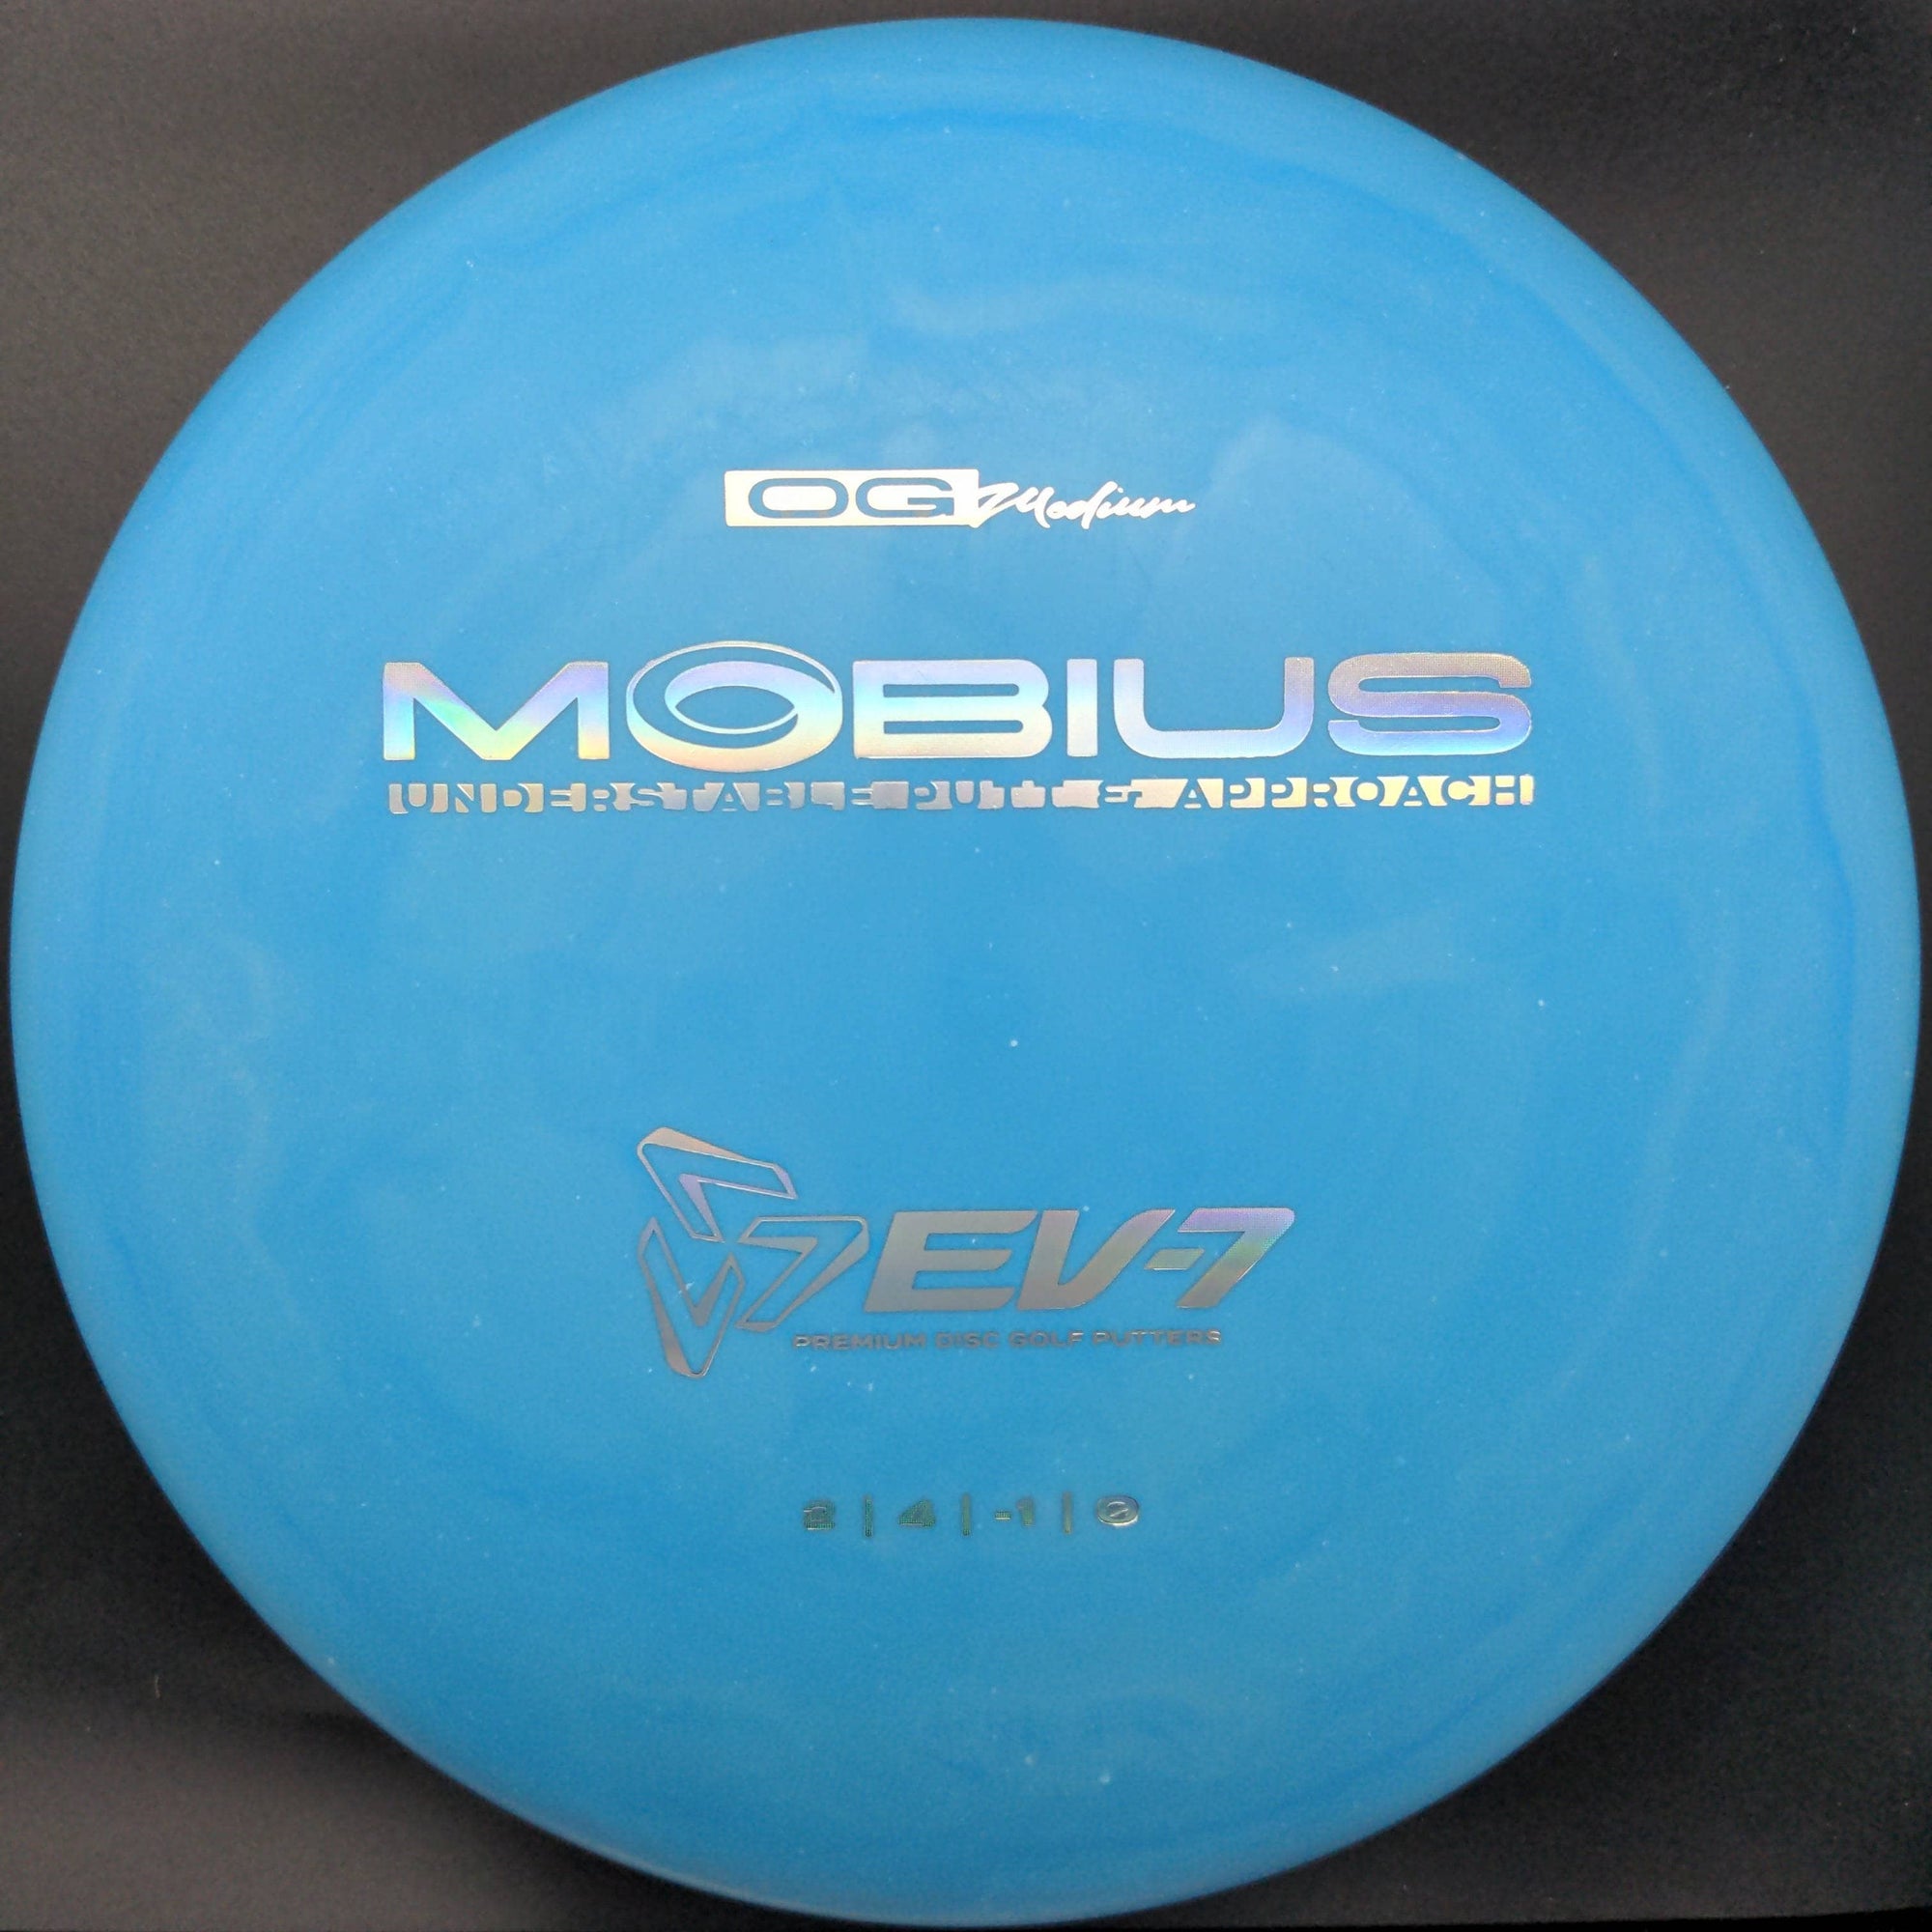 ev7 Putter Mobius, OG Medium Plastic